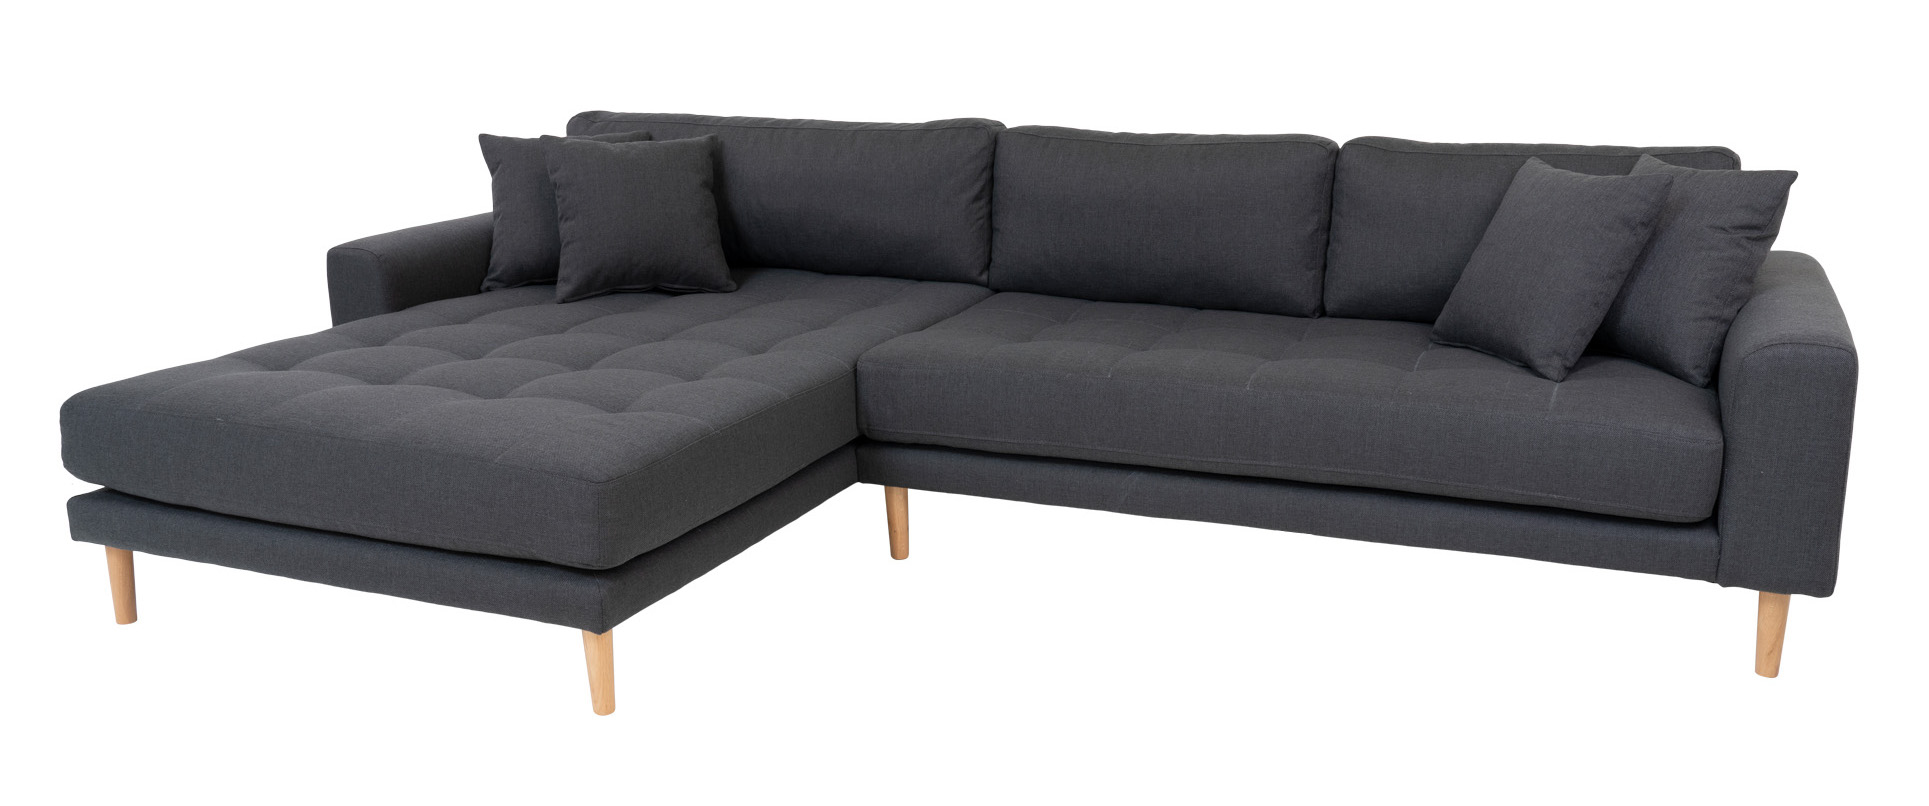 Billede af Riviera lounge sofa mørkegrå, venstrevendt længde på 290 cm